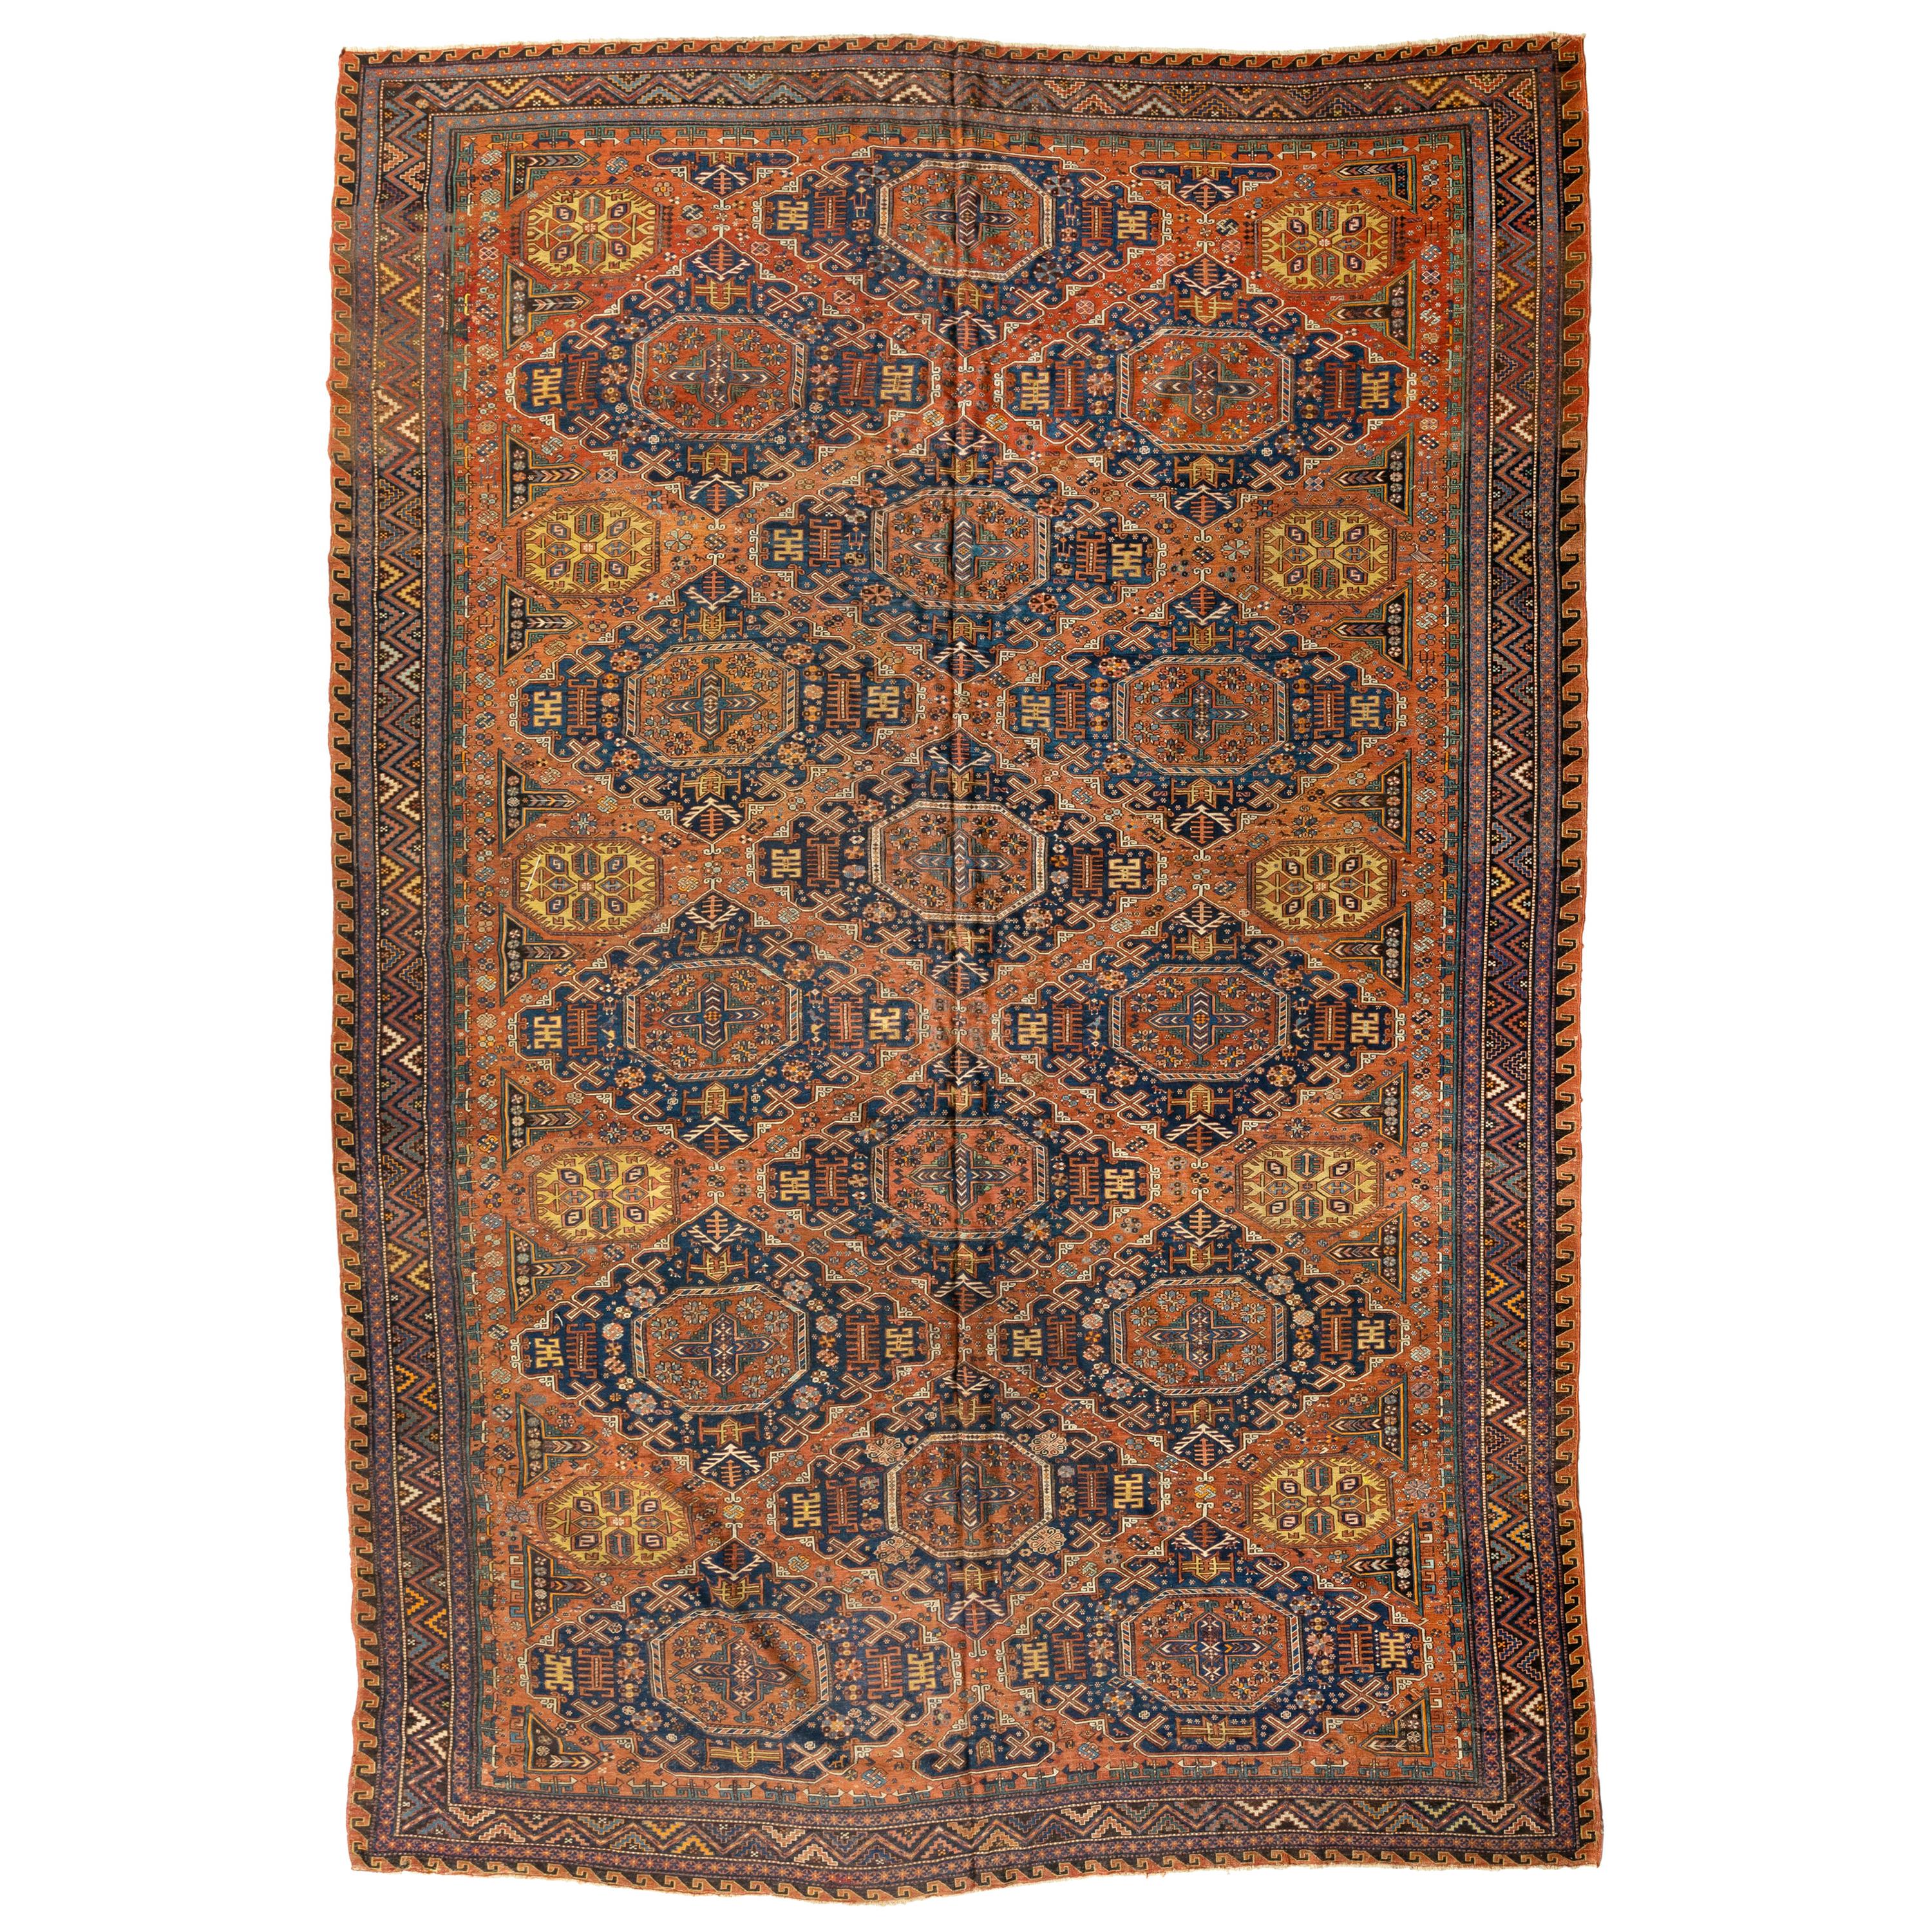 Grand tapis Soumak caucasien surdimensionné, tribal bleu et rouille, vers les années 1920